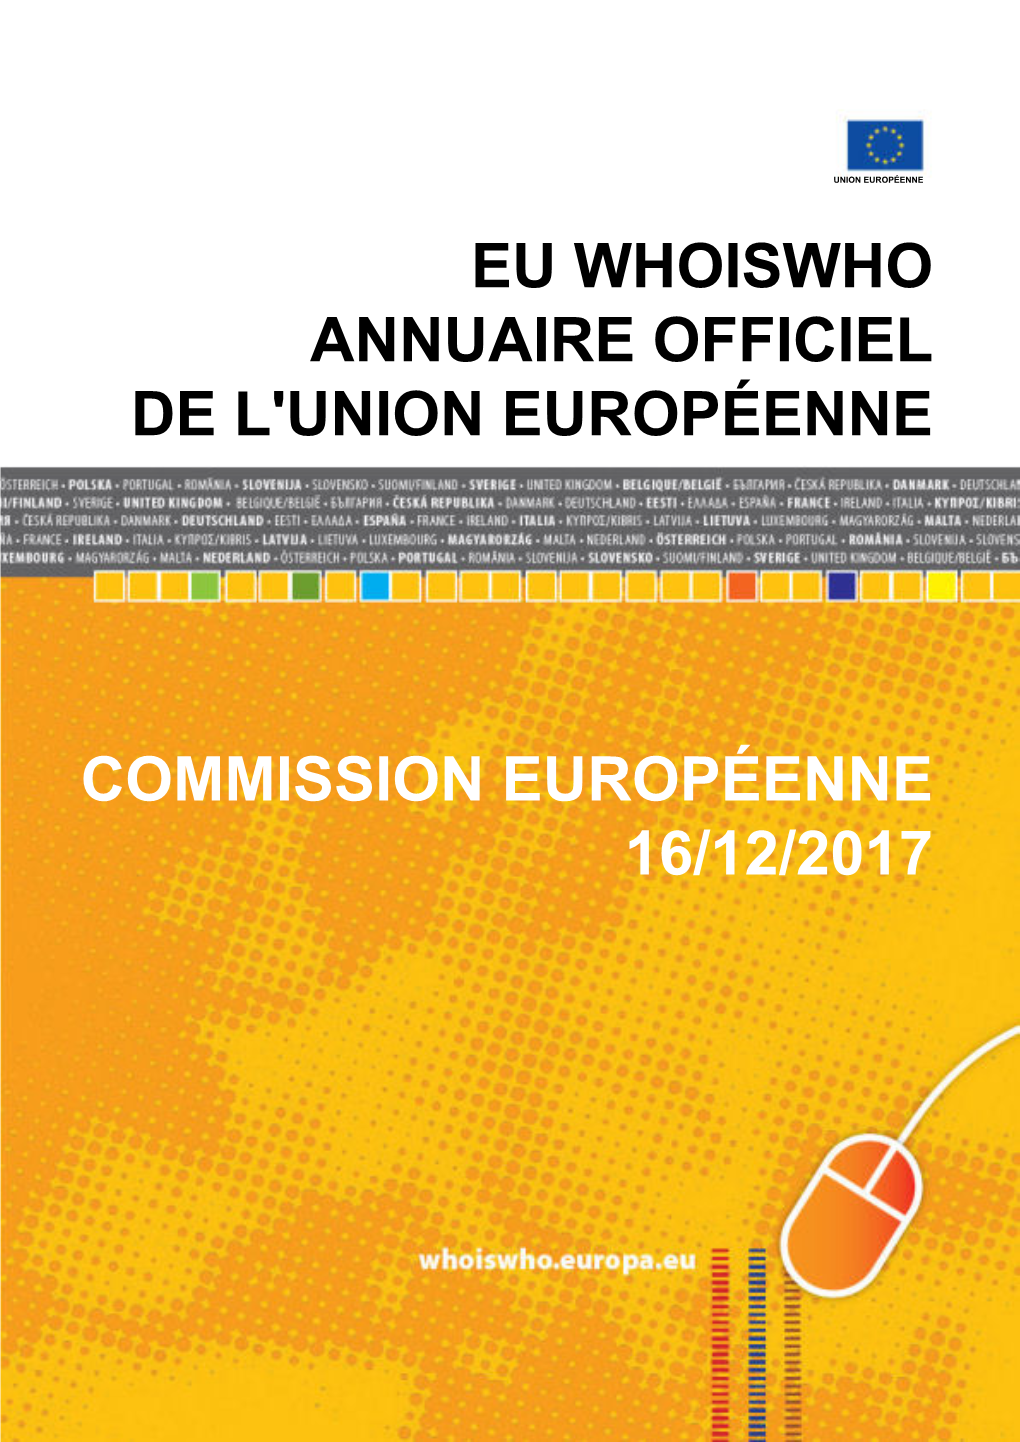 Eu Whoiswho Annuaire Officiel De L'union Européenne Commission Européenne 16/12/2017